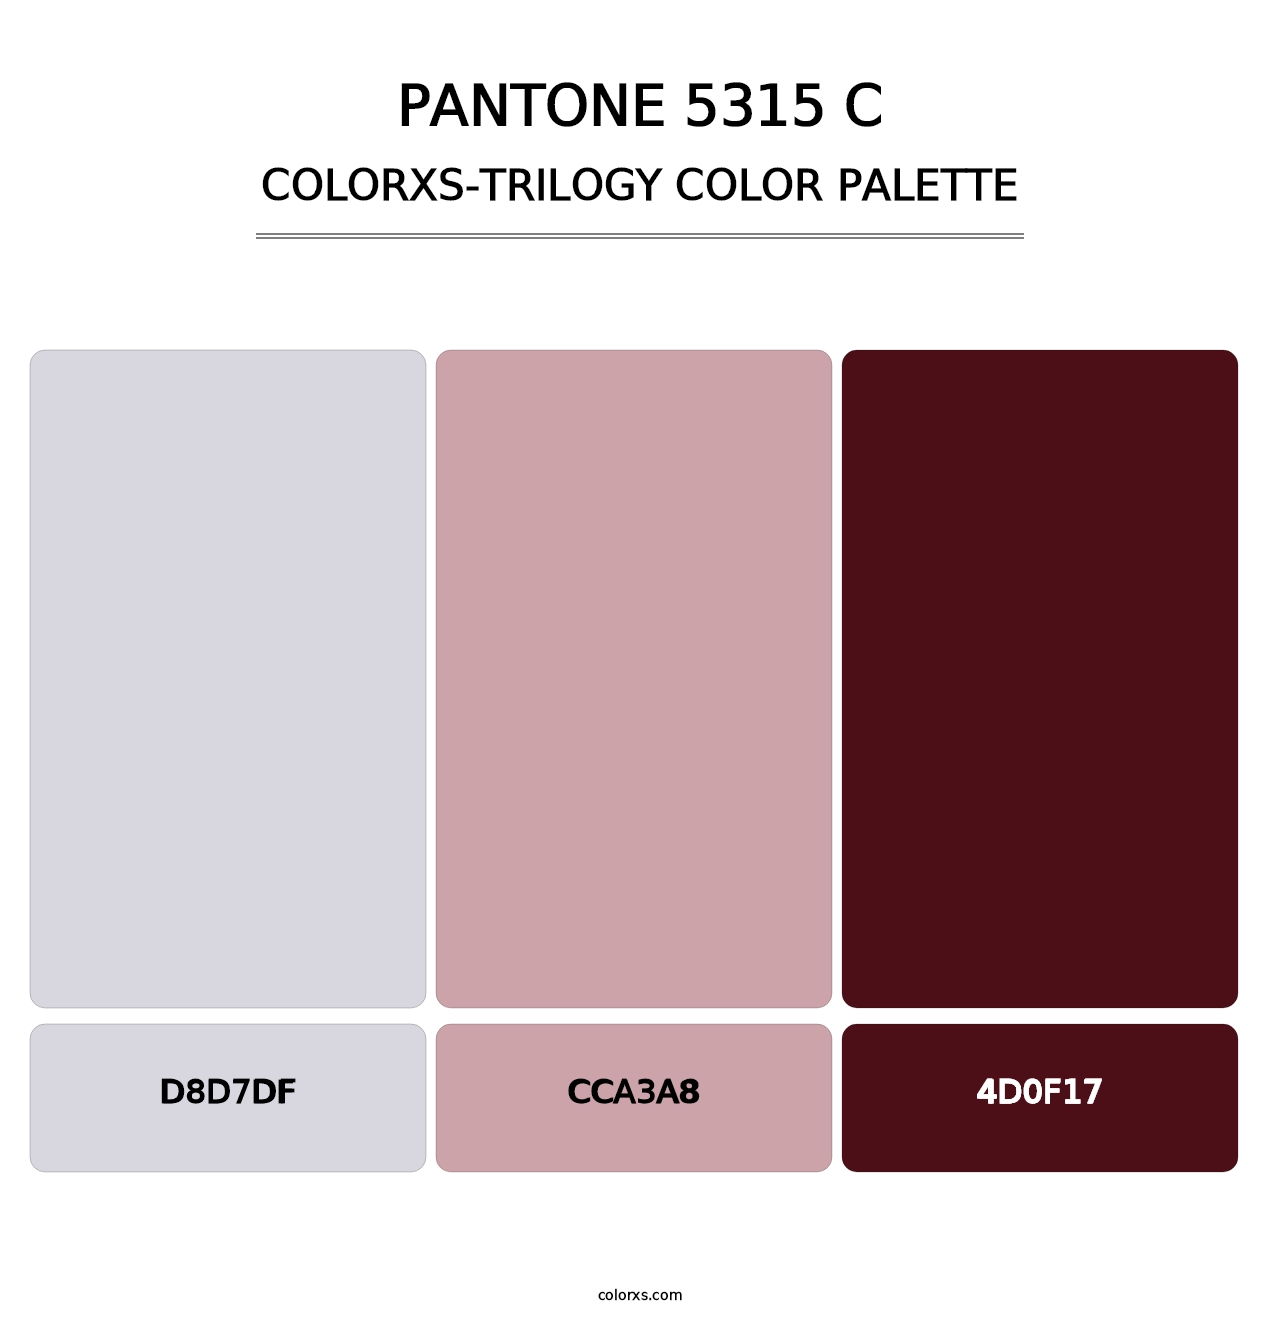 PANTONE 5315 C - Colorxs Trilogy Palette